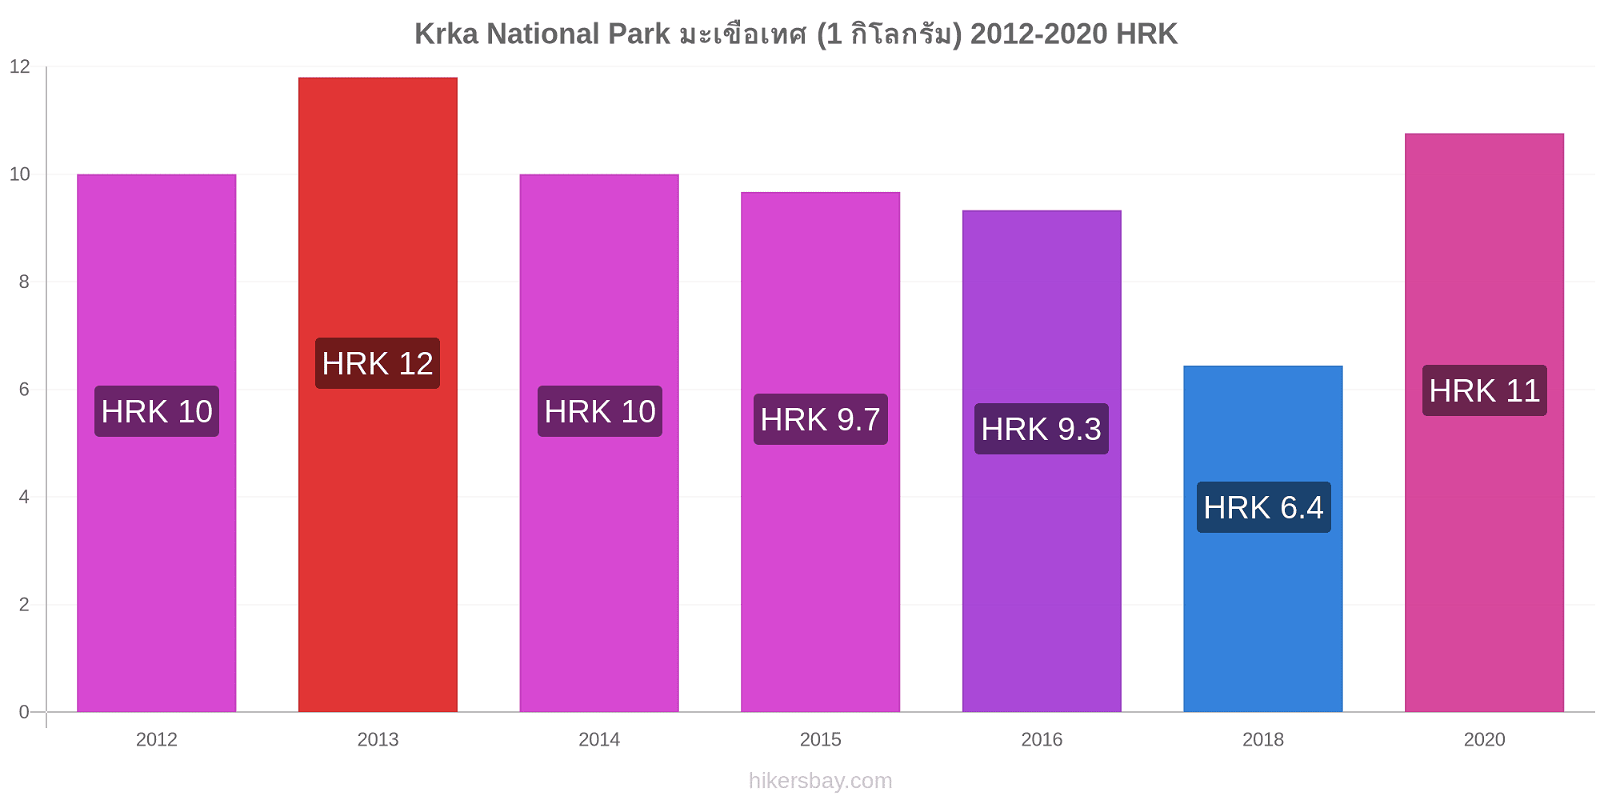 Krka National Park การเปลี่ยนแปลงราคา มะเขือเทศ (1 กิโลกรัม) hikersbay.com